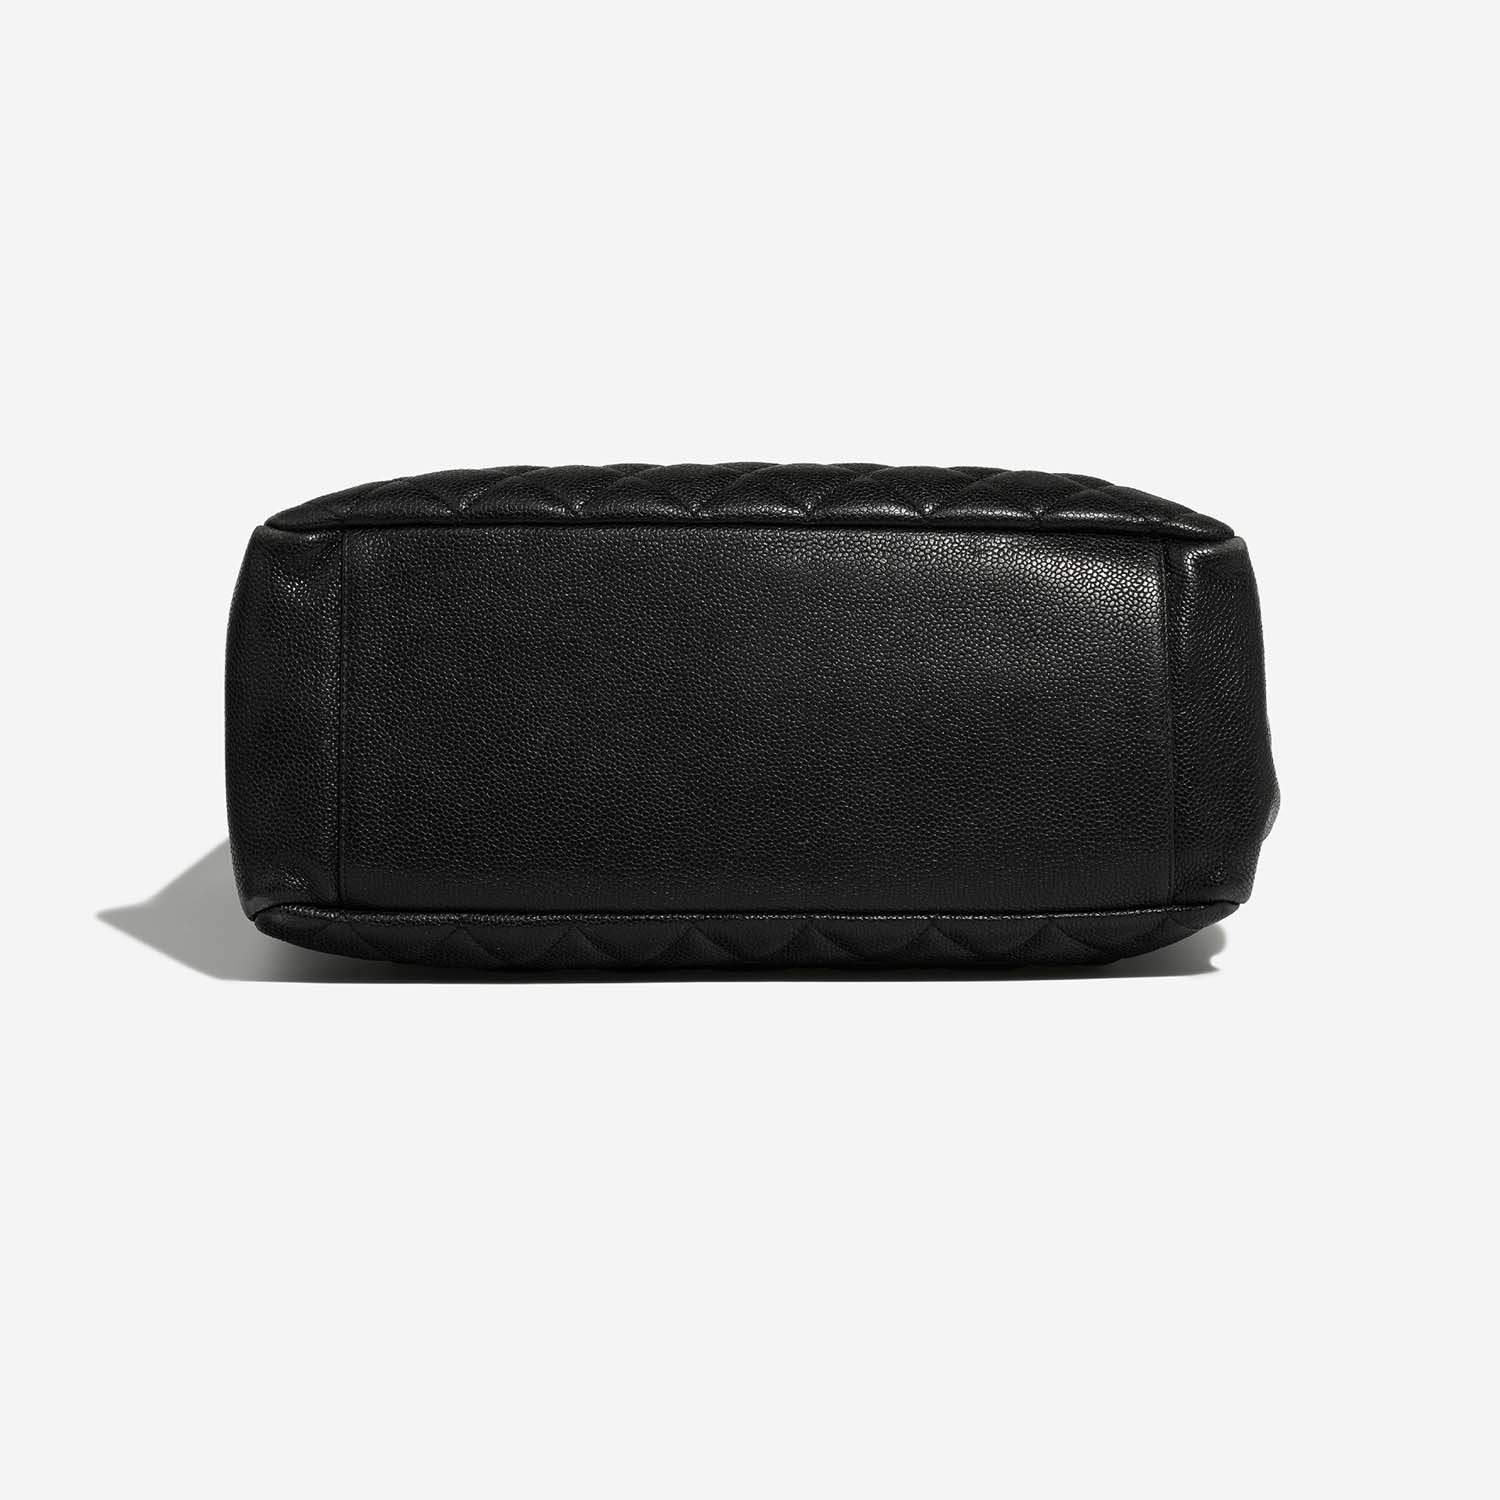 Chanel ShoppingTote GST Black Bottom | Verkaufen Sie Ihre Designertasche auf Saclab.com